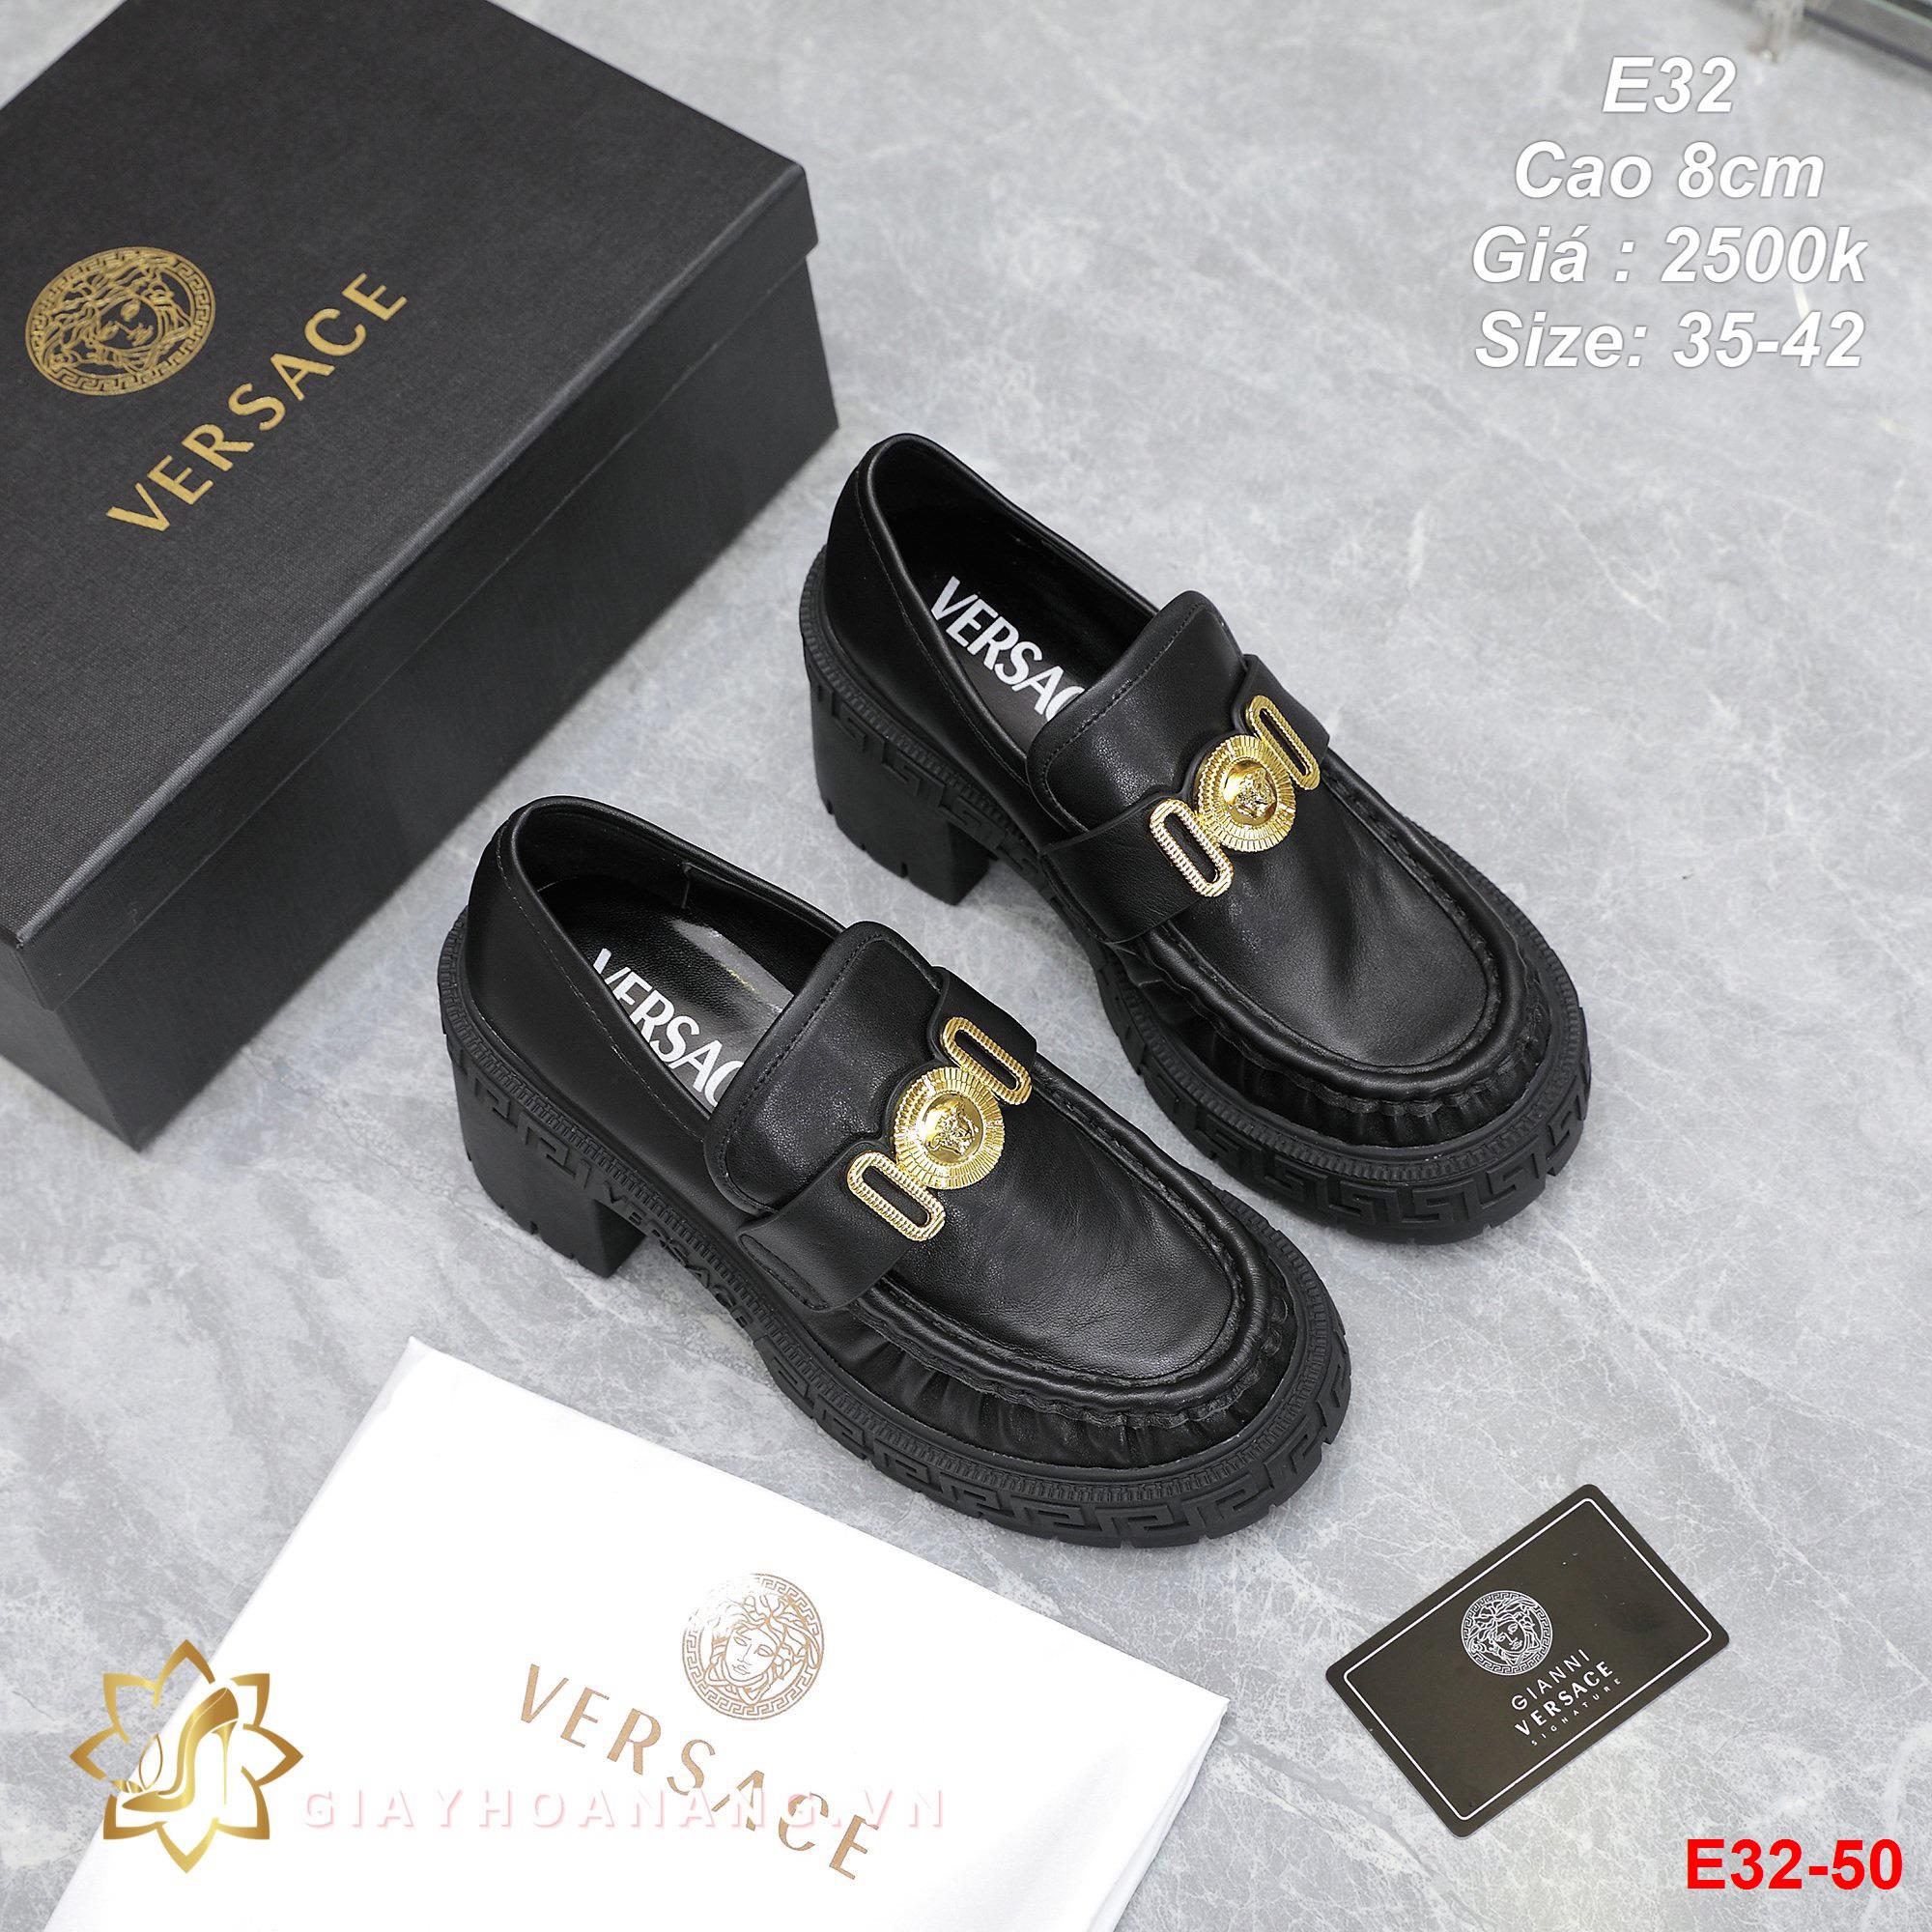 E32-50 Versace giày cao 8cm siêu cấp